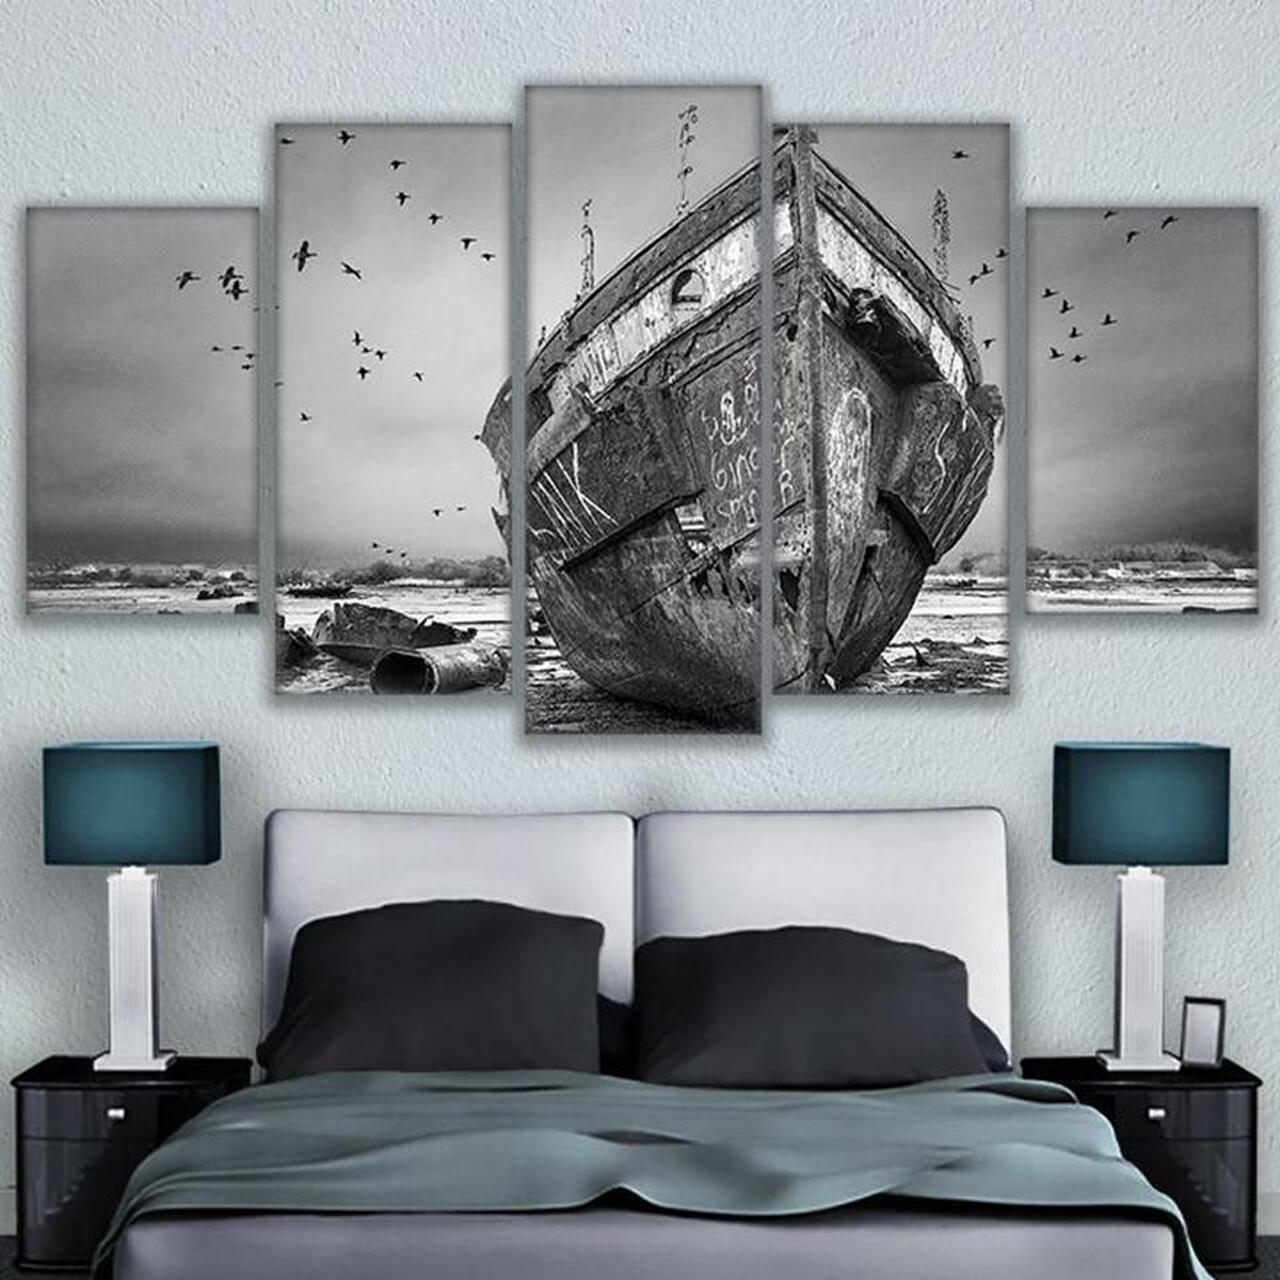 fishing boat 5 pices peinture sur toile impression sur toile toile art pour la dcoration